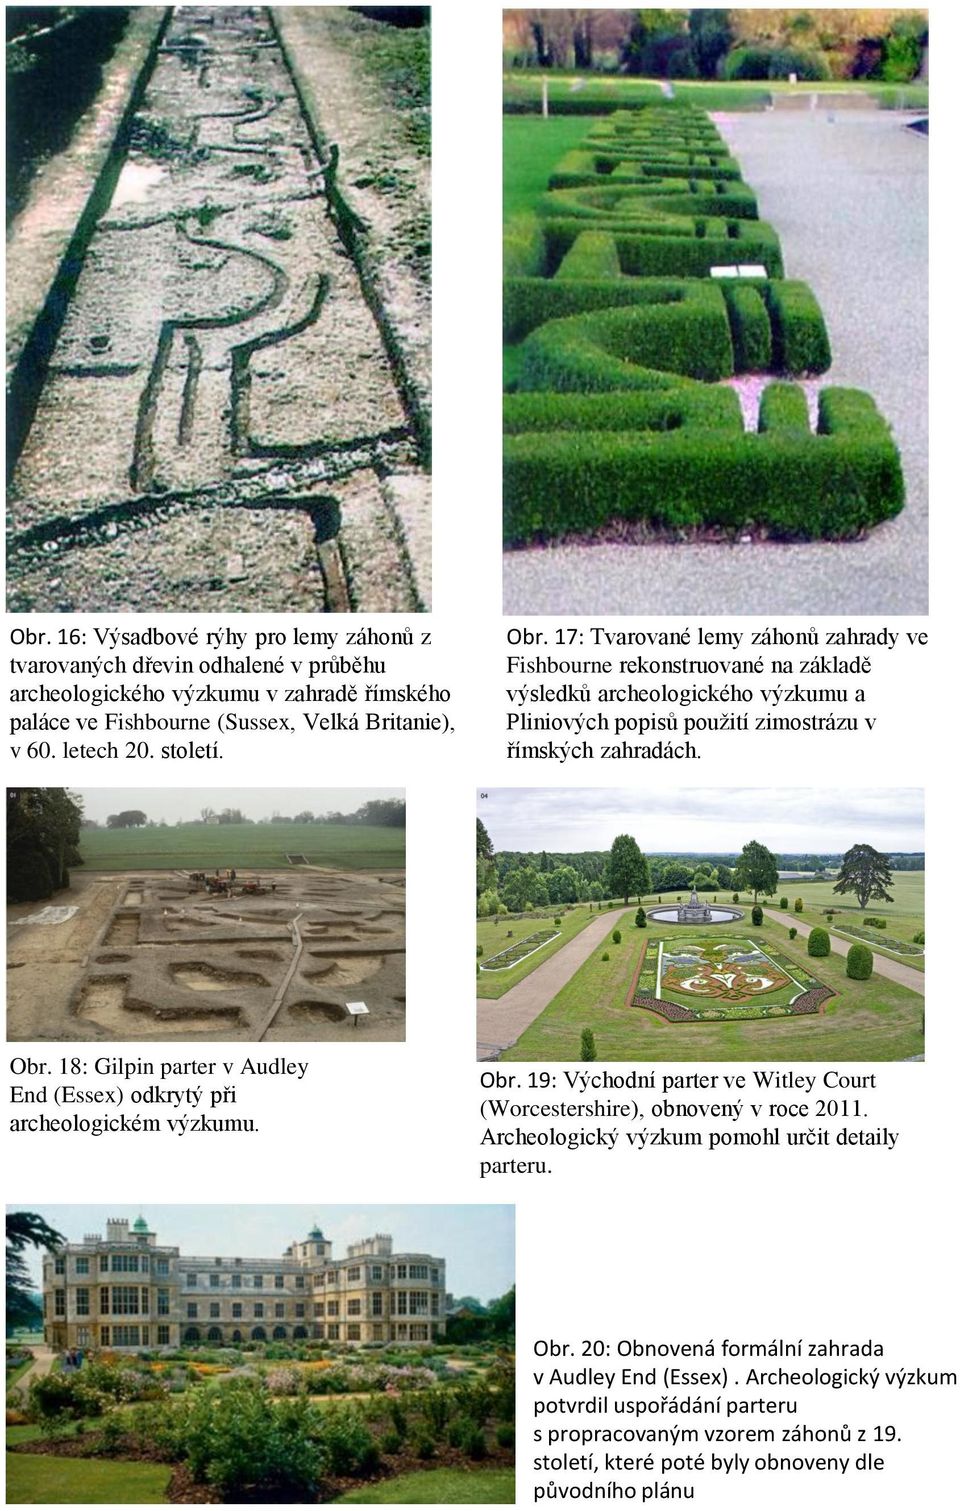 Obr. 19: Východní parter ve Witley Court (Worcestershire), obnovený v roce 2011. Archeologický výzkum pomohl určit detaily parteru. Obr. 20: Obnovená formální zahrada v Audley End (Essex).